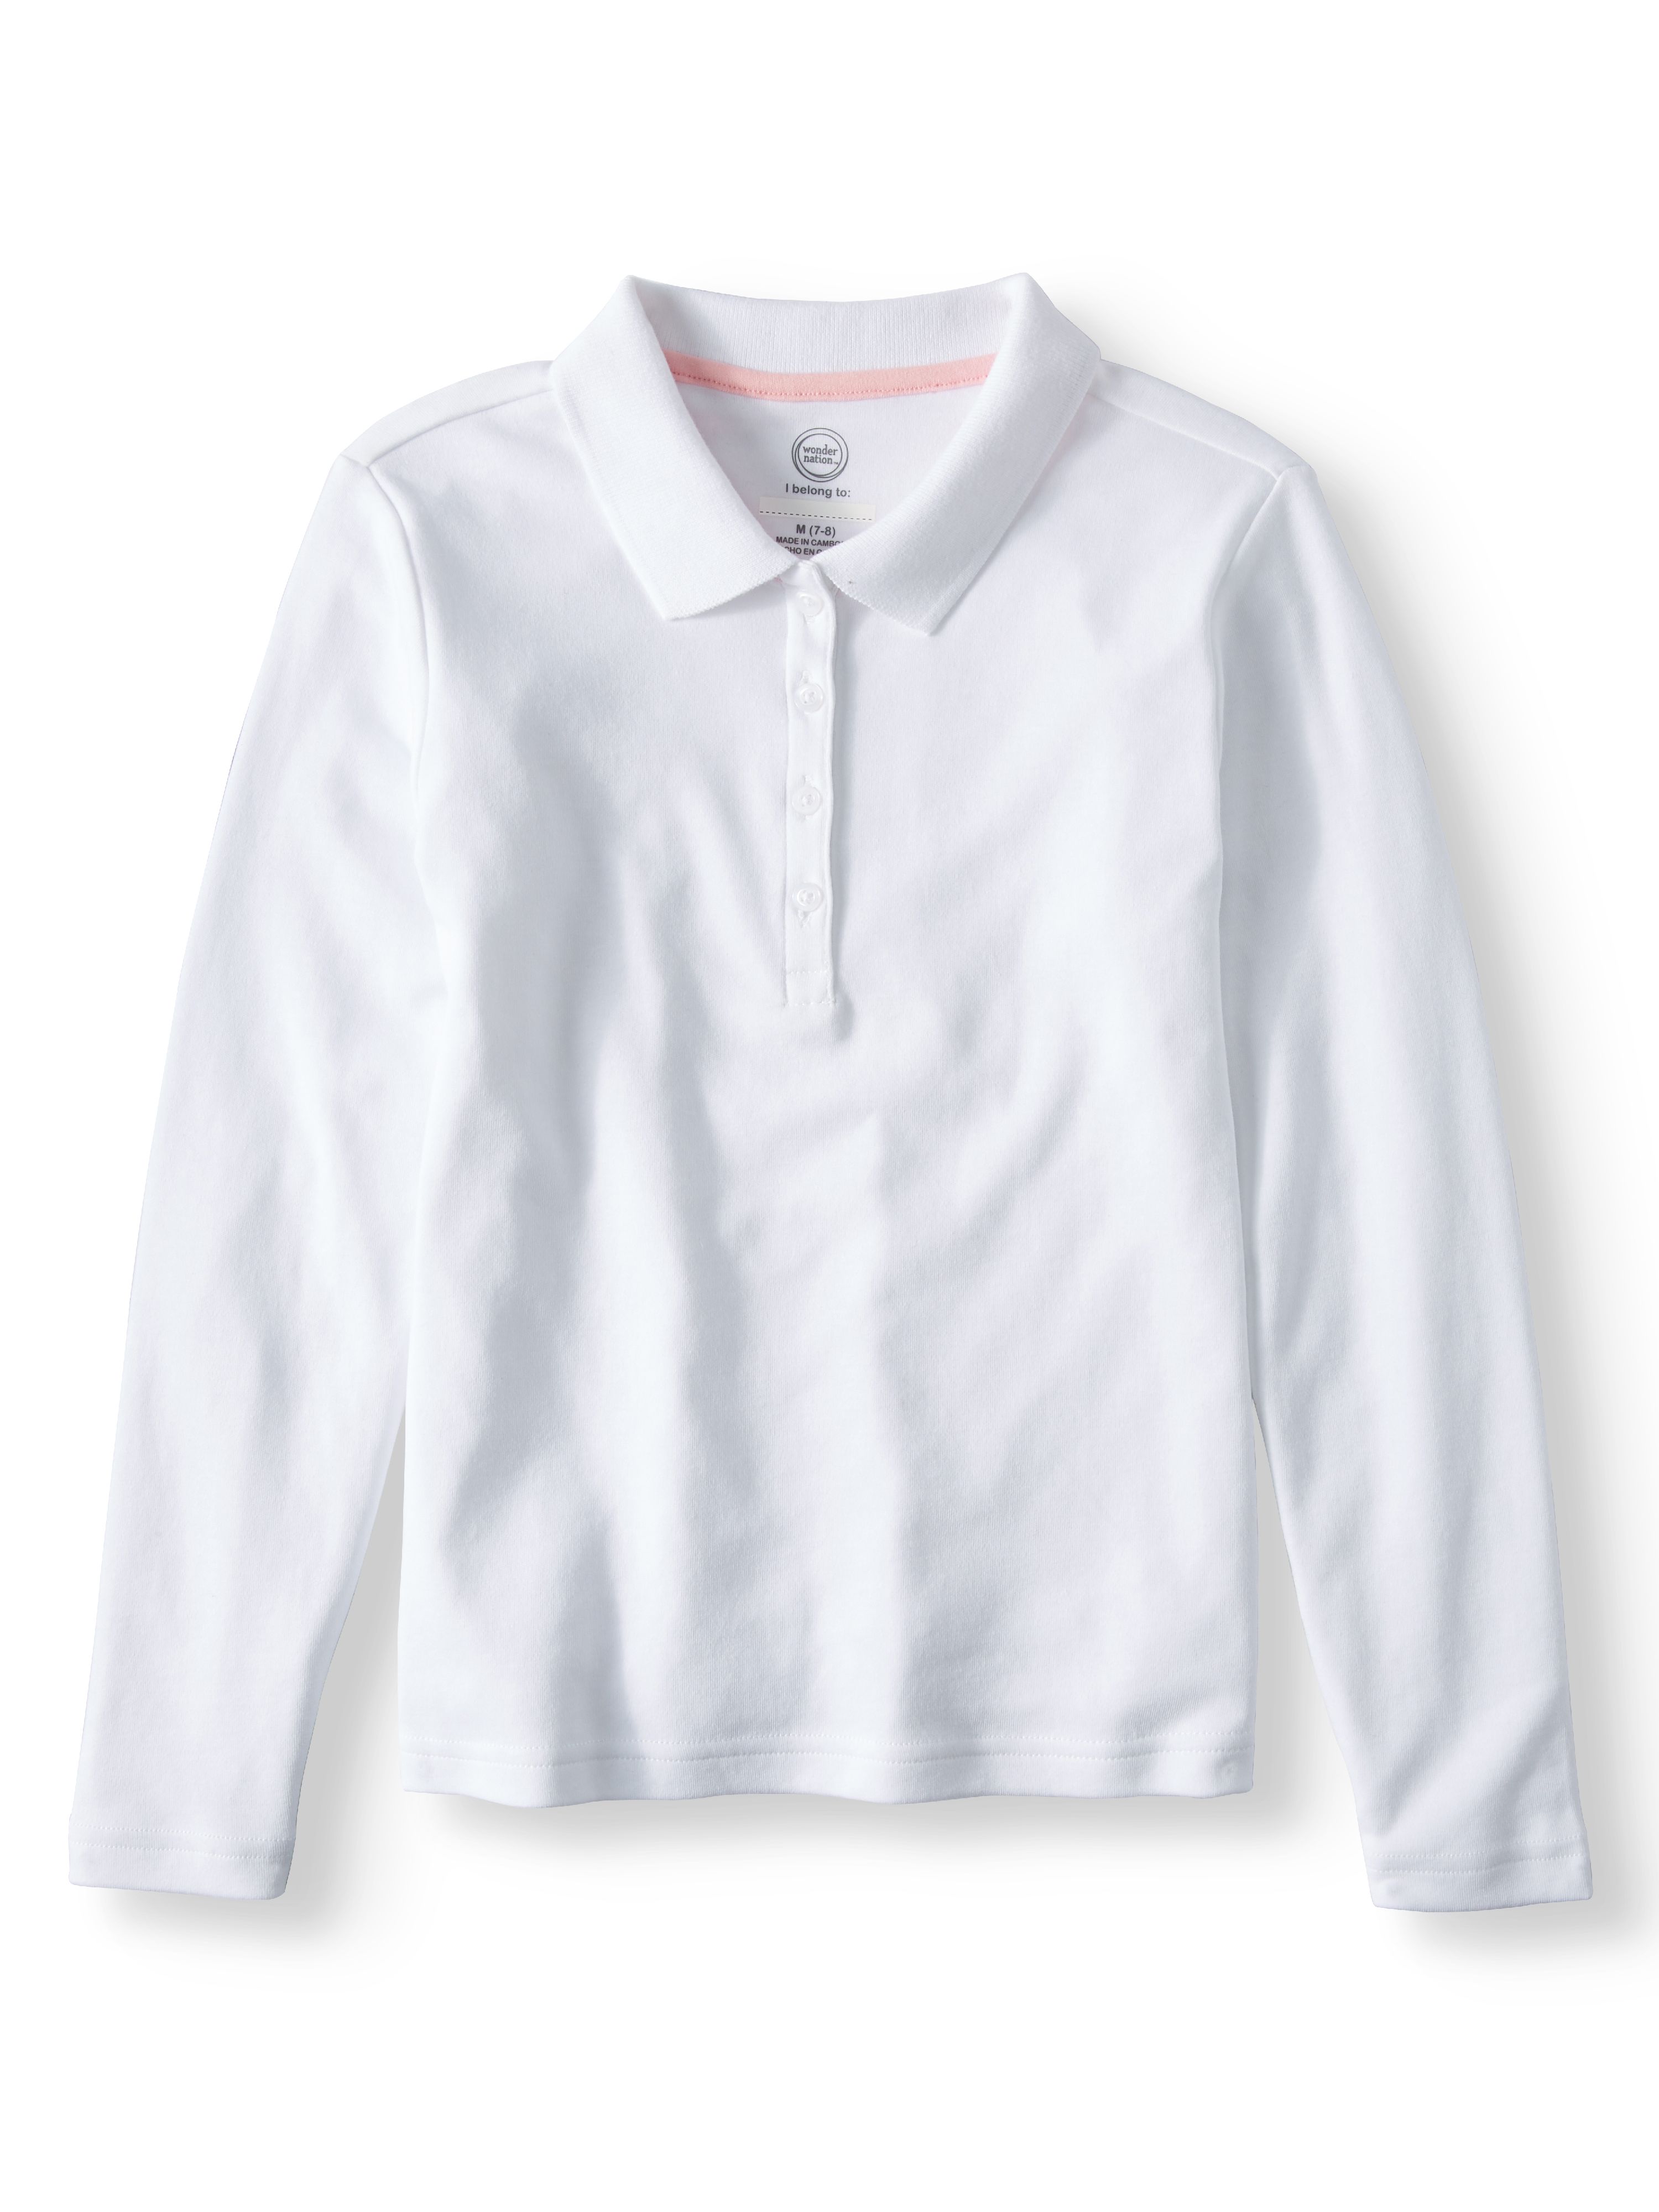 Wonder Nation Girls School Uniform Long Sleeve Interlock Polo Shirt, 2-Pack Value Bundle, Sizes 4-18 - image 3 of 8